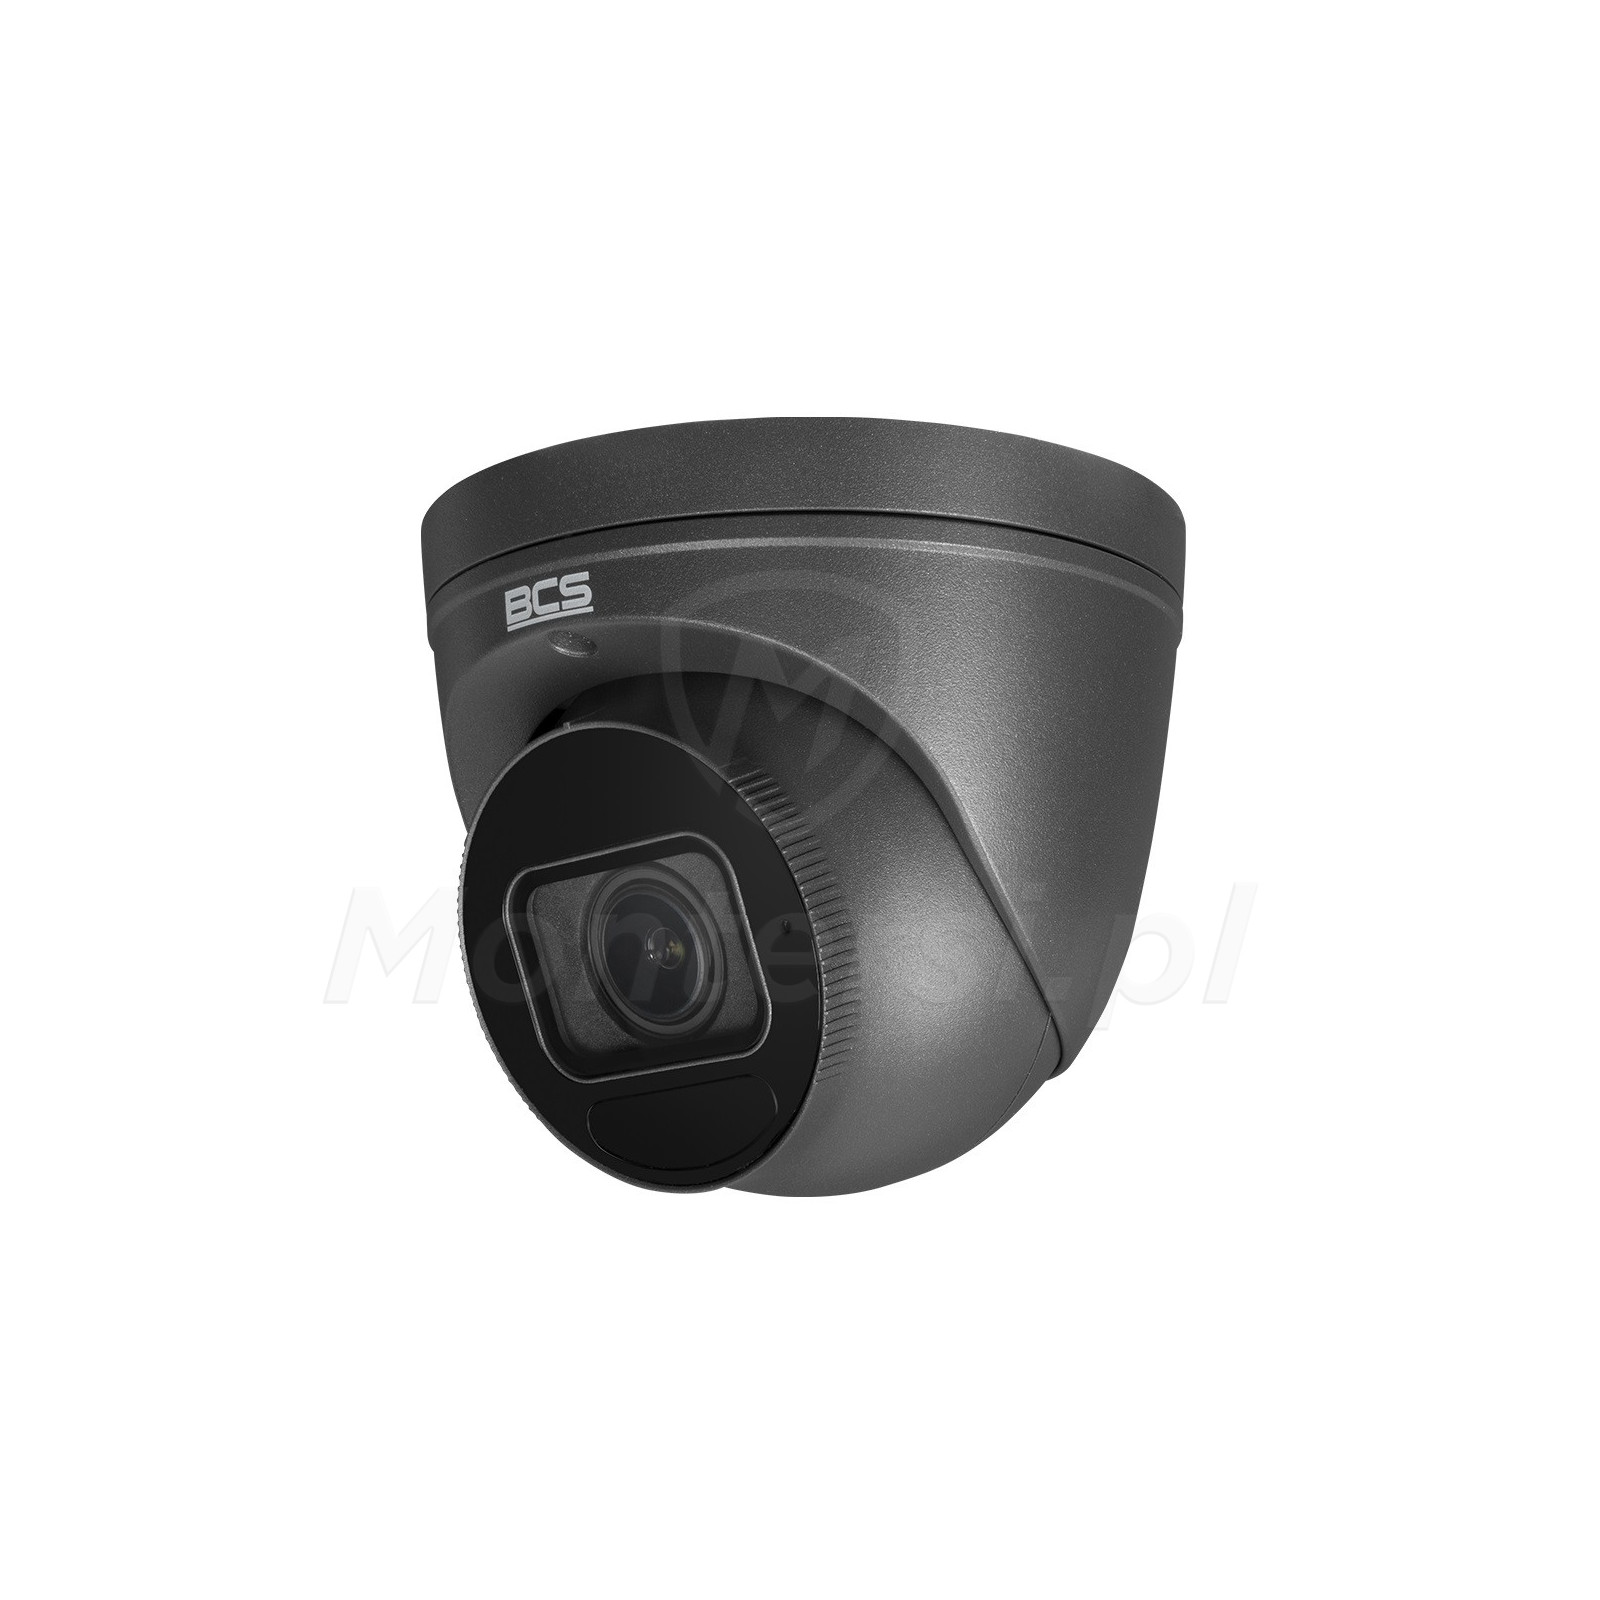 Wandaloodporna kamera IP BCS-P-EIP54VSR4-Ai2-G